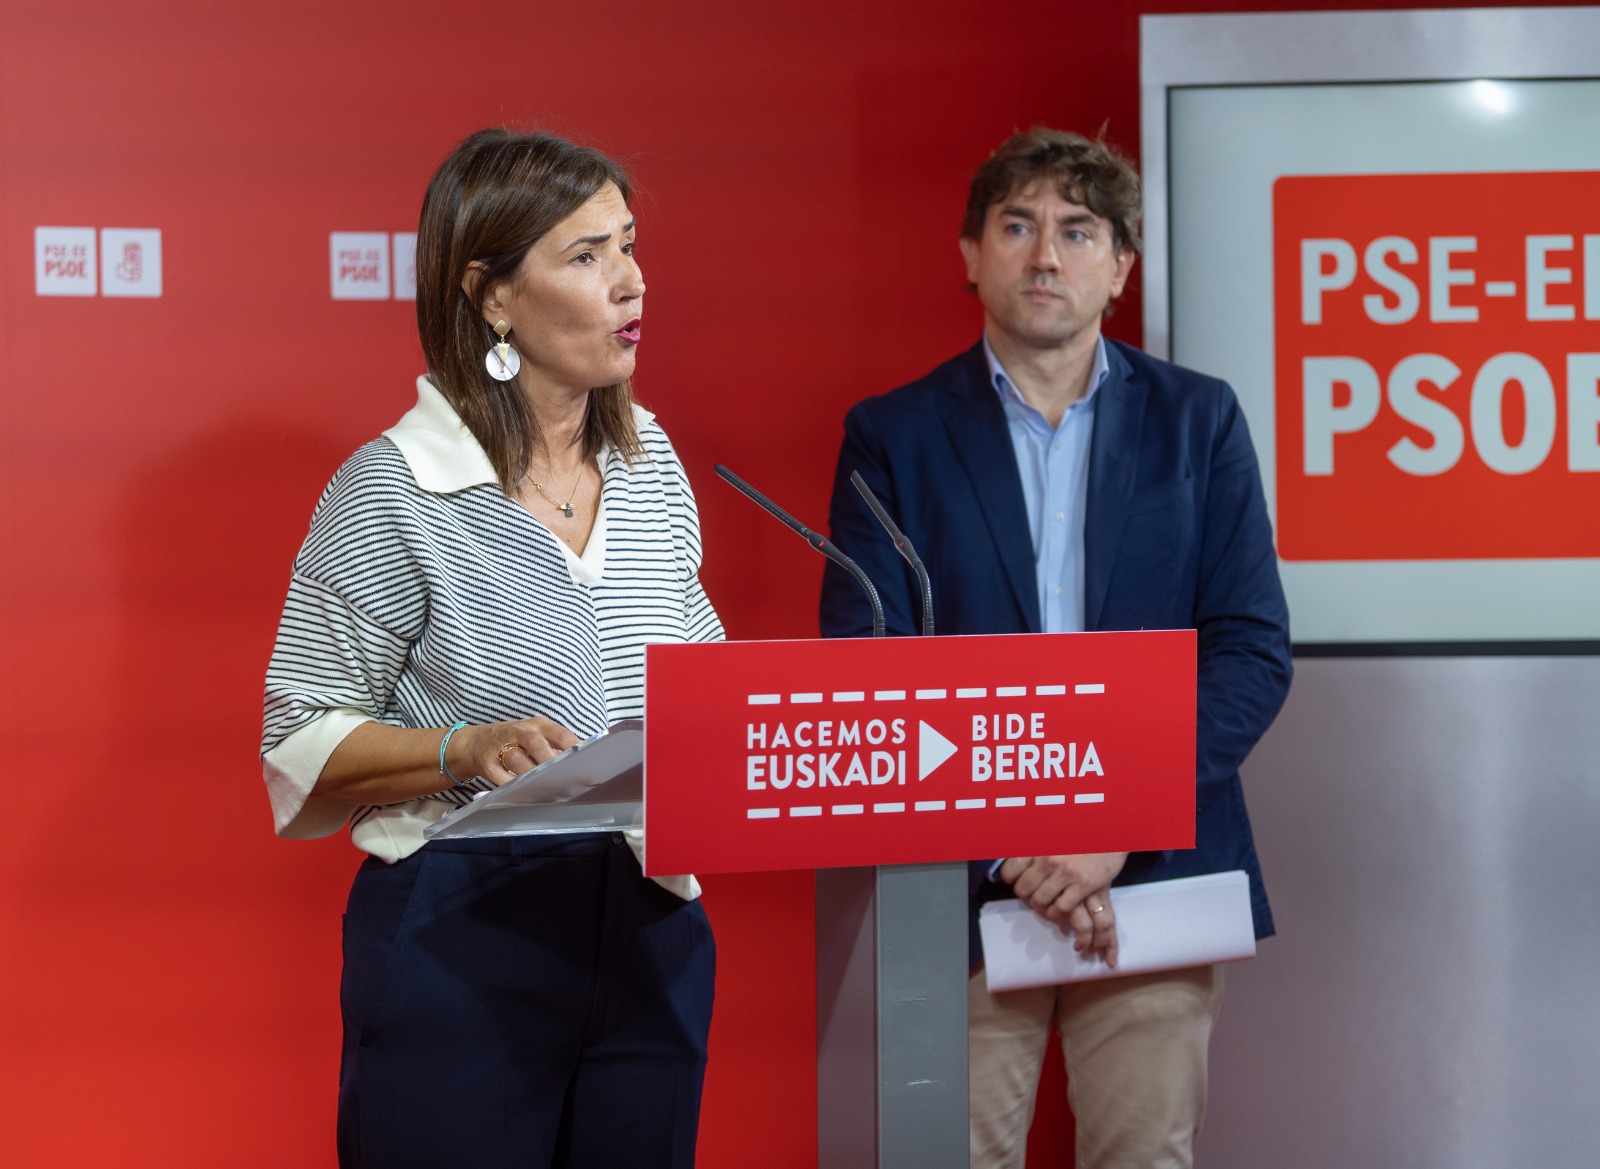 La Secretaria de Política Institucional del PSE-EE, Begoña Gil, y el Secretario General del PSE-EE, Eneko Andueza, durante la rueda de prensa del 25 de octubre celebrada en la sede del partido en Bilbao | Foto: Socialistas Vascos.